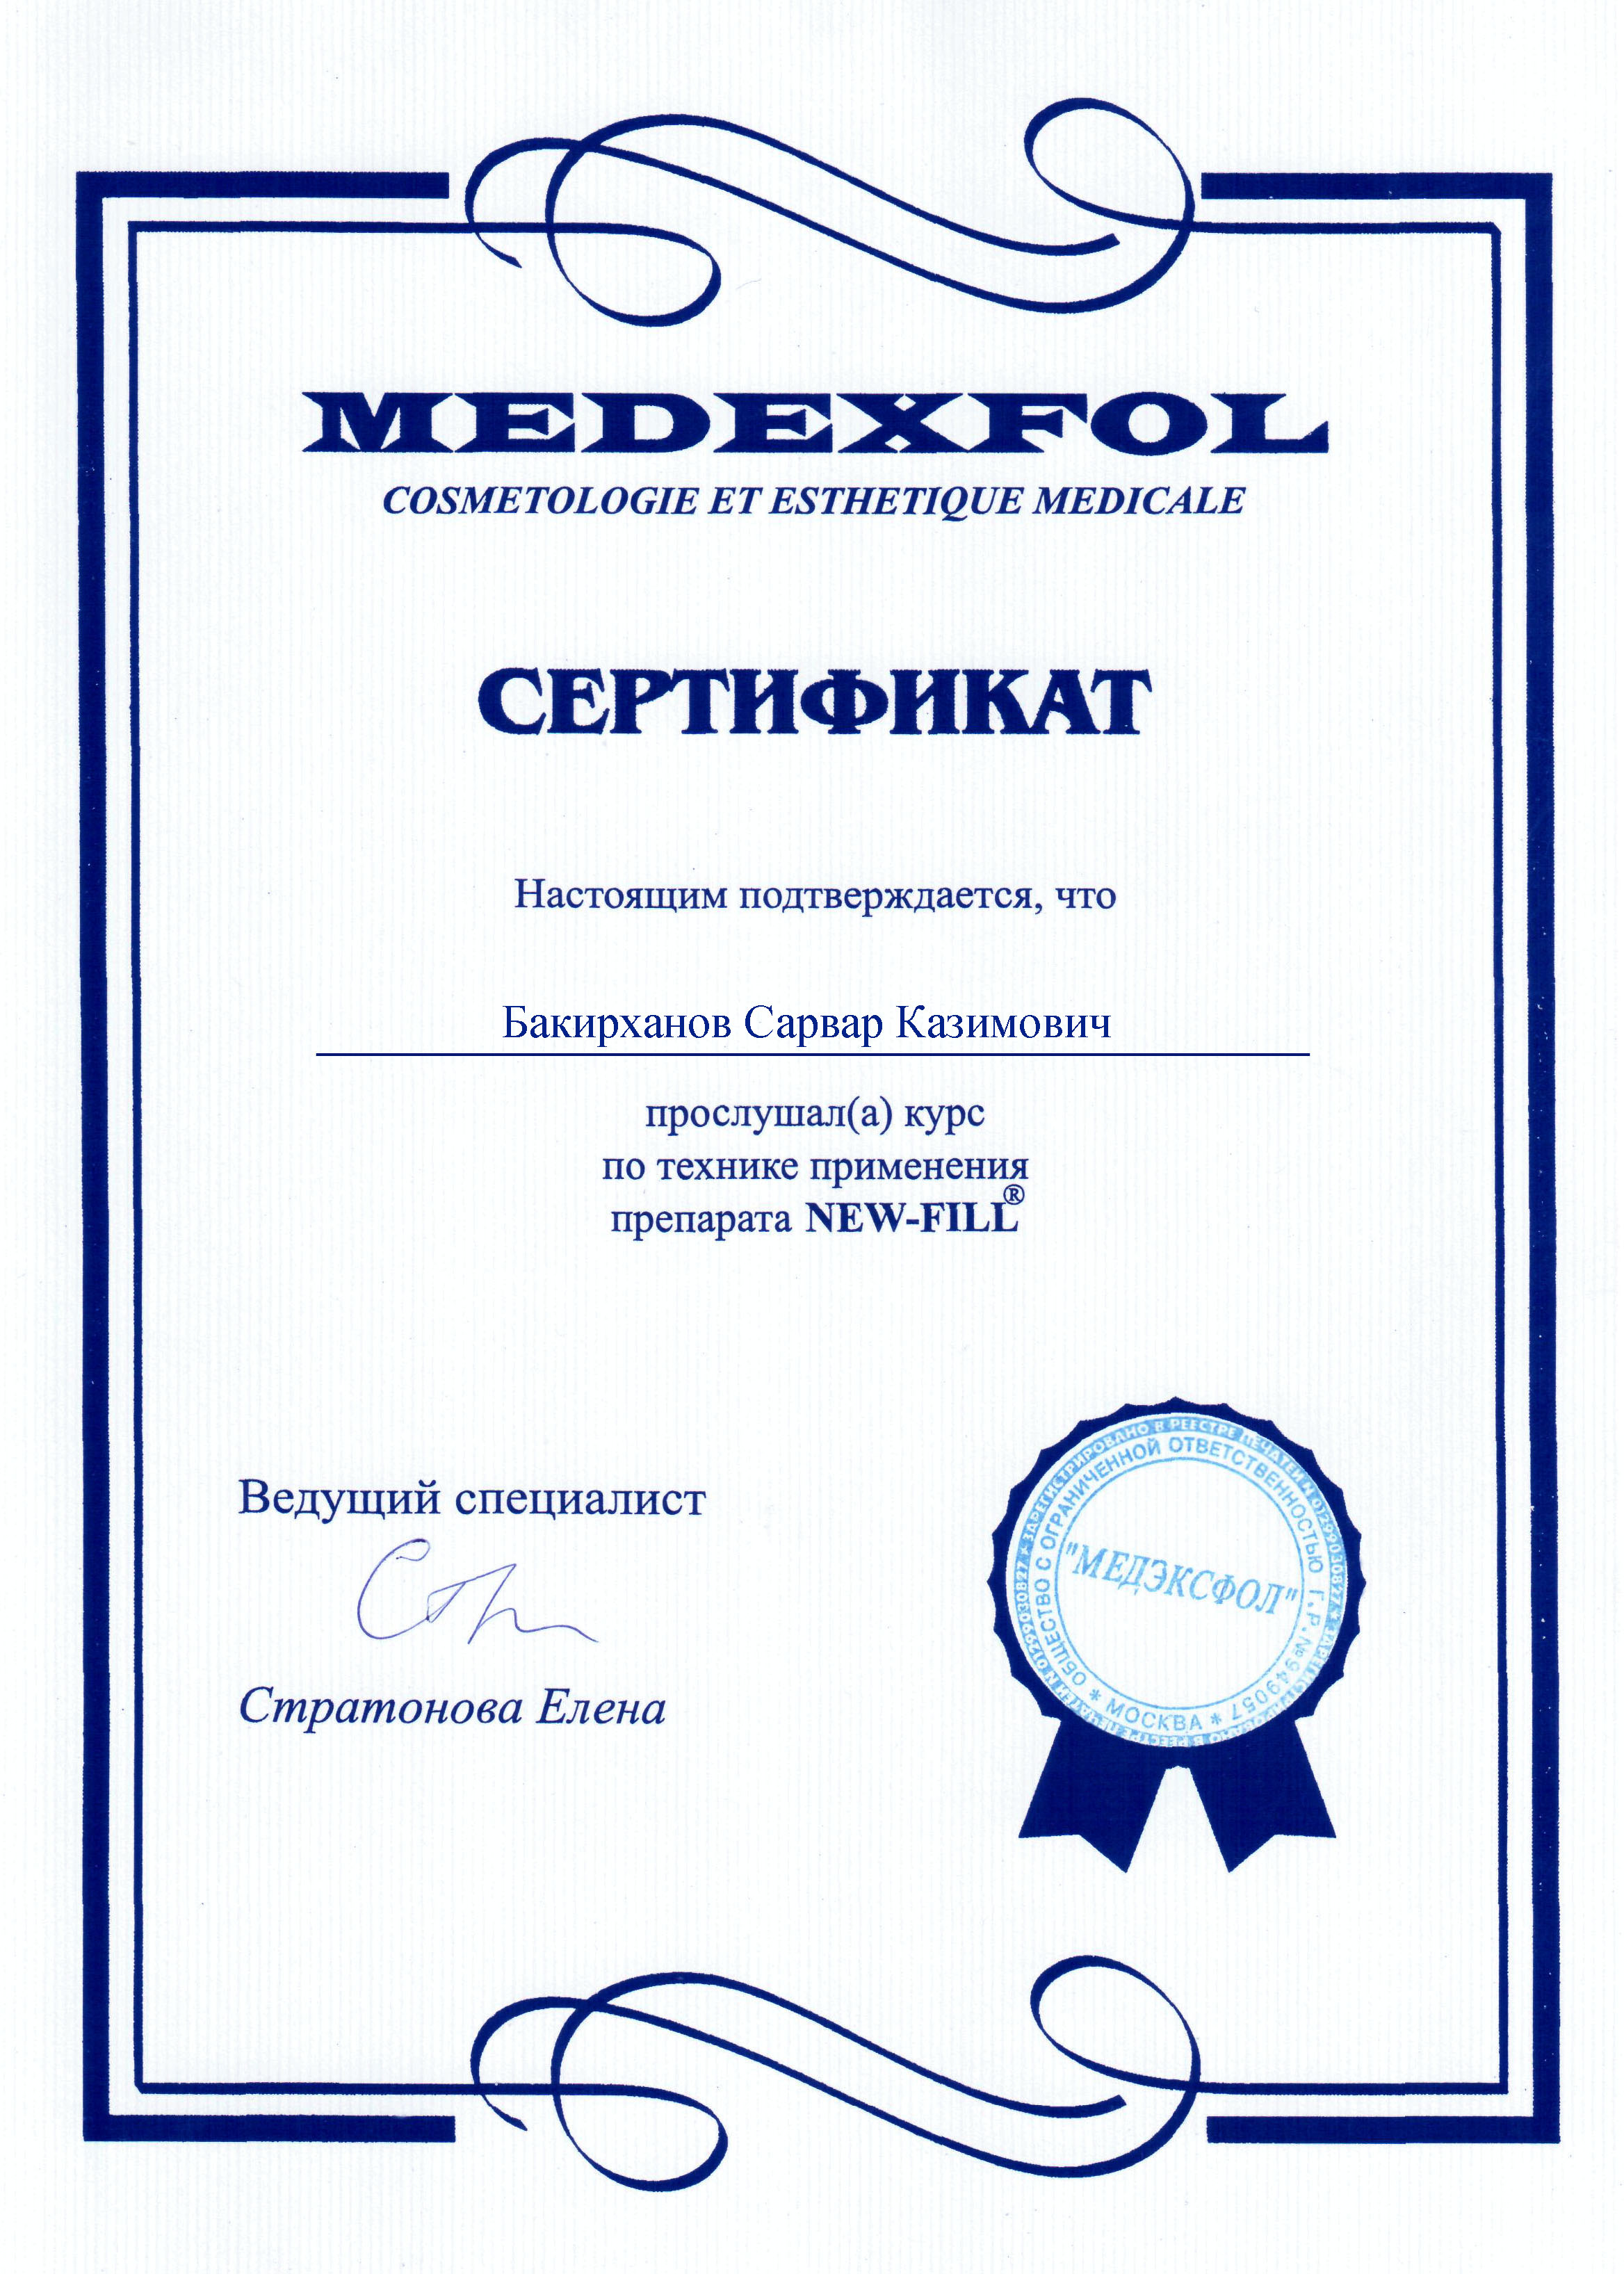 Сертификат по технике применения препарата NEW-FILL